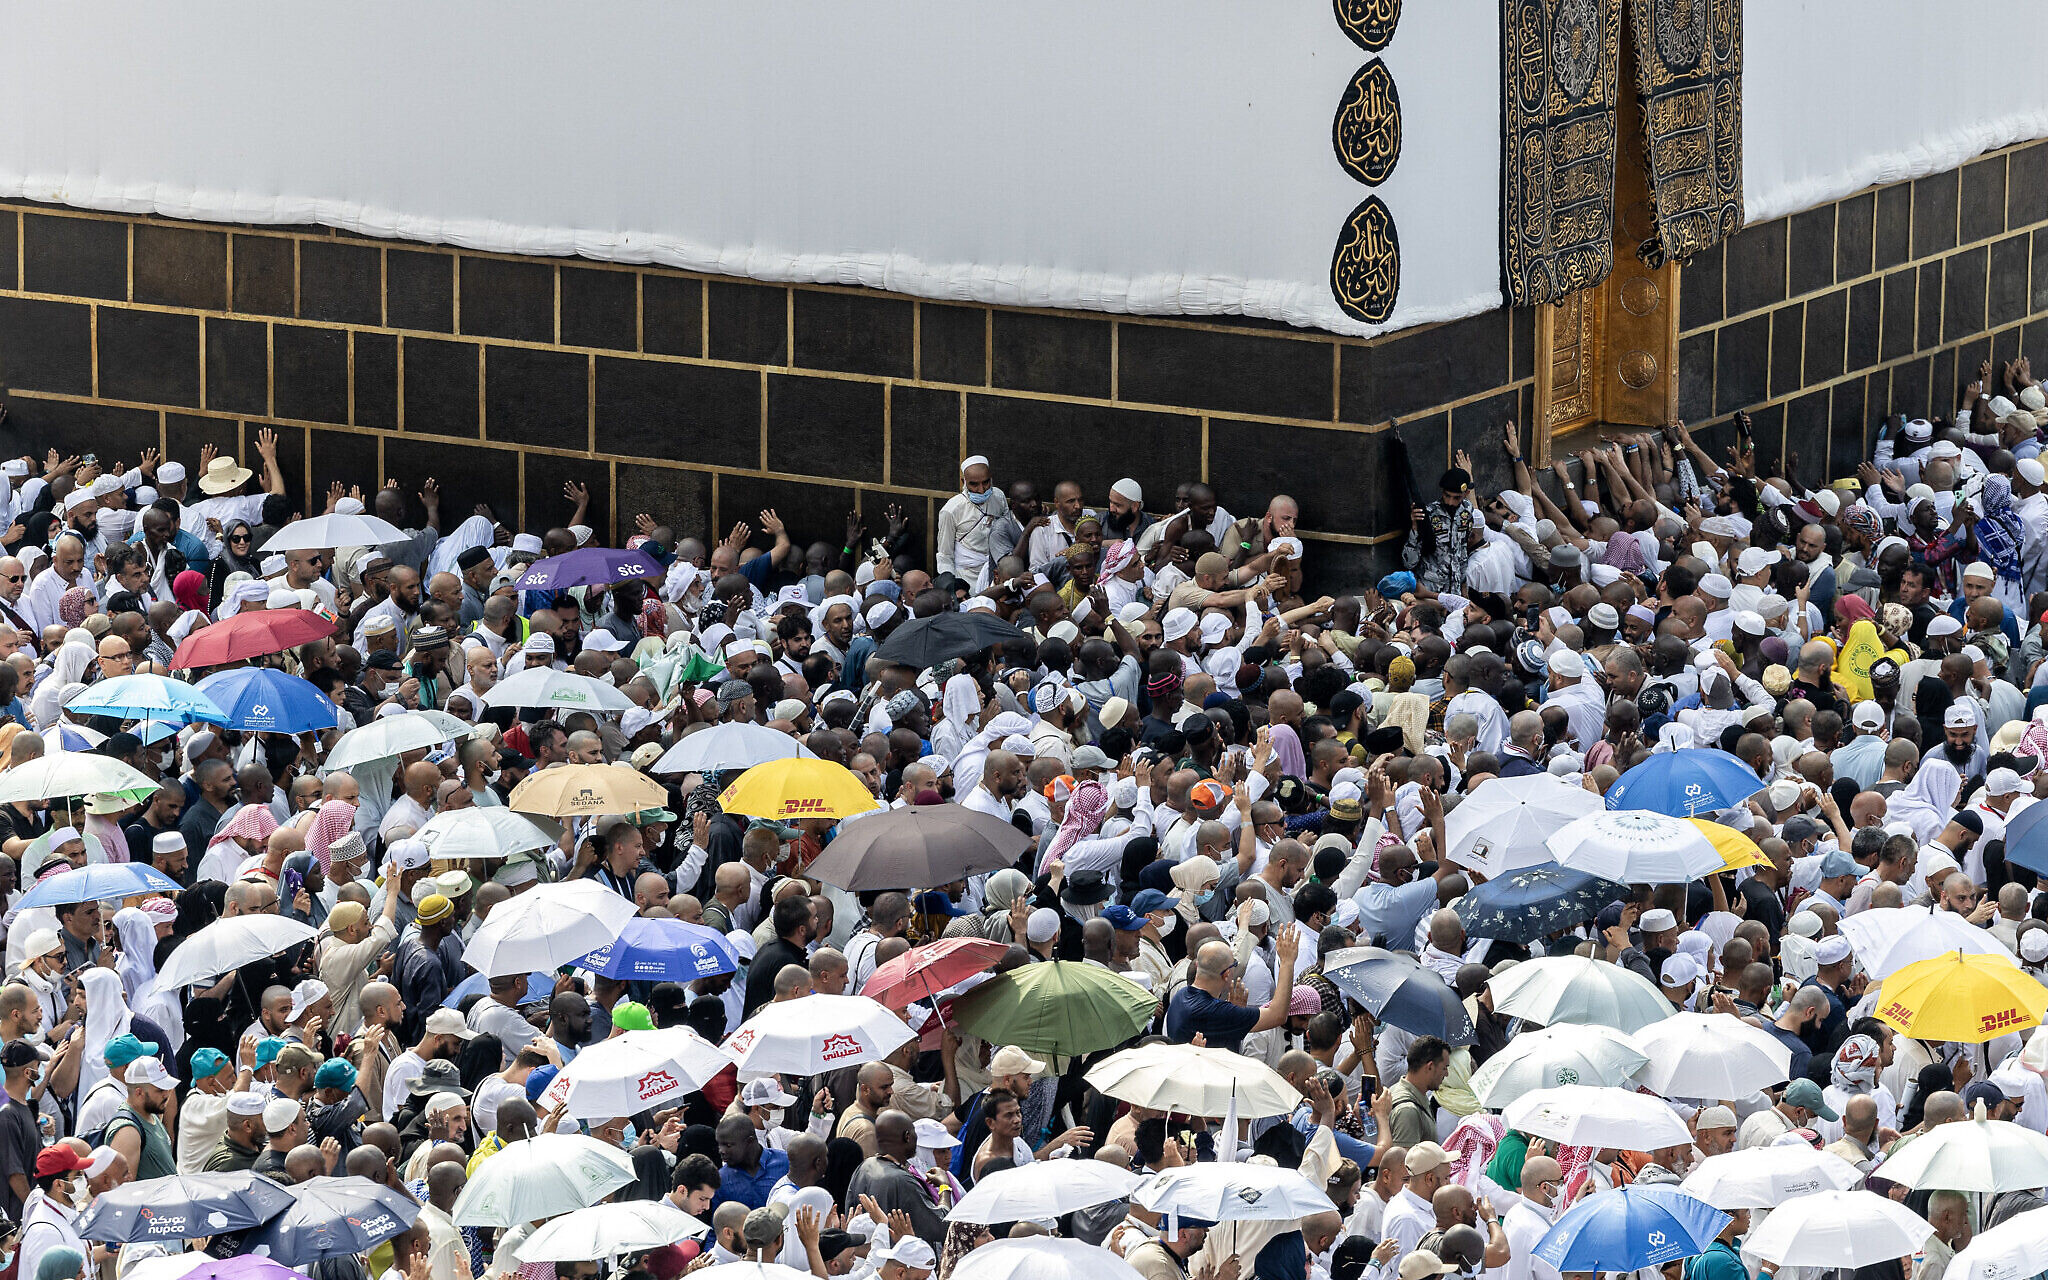 Hajj Pilgrims: ਹੱਜ ਲਈ ਮੱਕਾ ਗਏ 550 ਸ਼ਰਧਾਲੂਆਂ ਦੀ ਇੱਕ ਹਫ਼ਤੇ 'ਚ ਮੌਤ, ਸਭ ਤੋਂ ਵੱਧ ਇਸ ਦੇਸ਼ ਦੇ ਨਾਗਰਿਕ